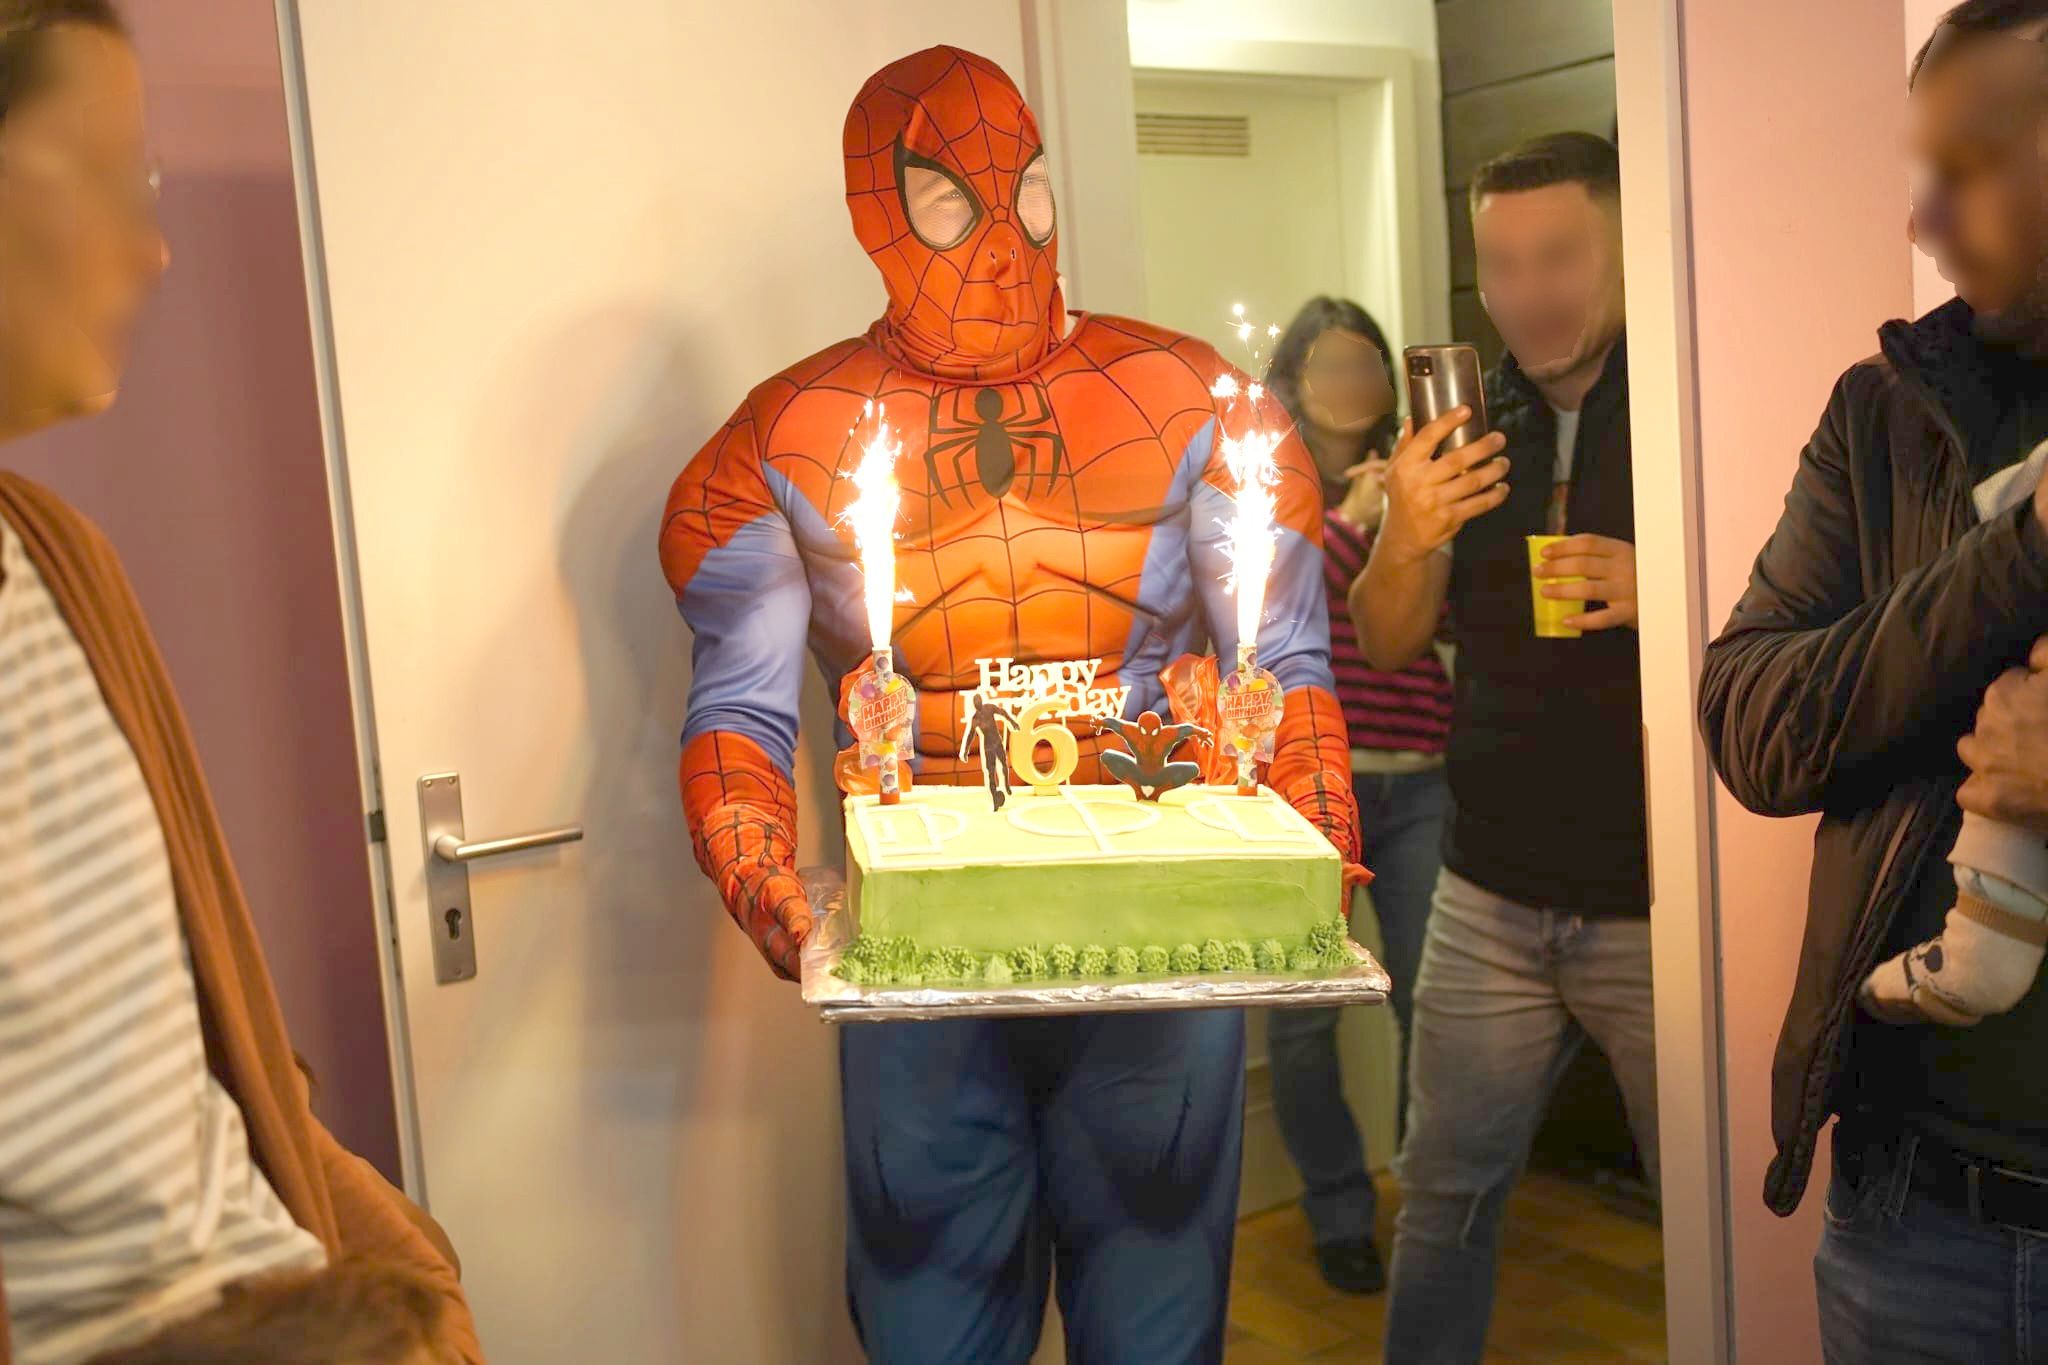 Auf dem Bild ist ein Animatuer als Spiderman verkleidet, der mit einer Torte in den Händen gerade ins Zimmertritt. Im Hintergrund sind Gäste zu sehen, die den Event fotografieren mit ihrem Mobilphone.